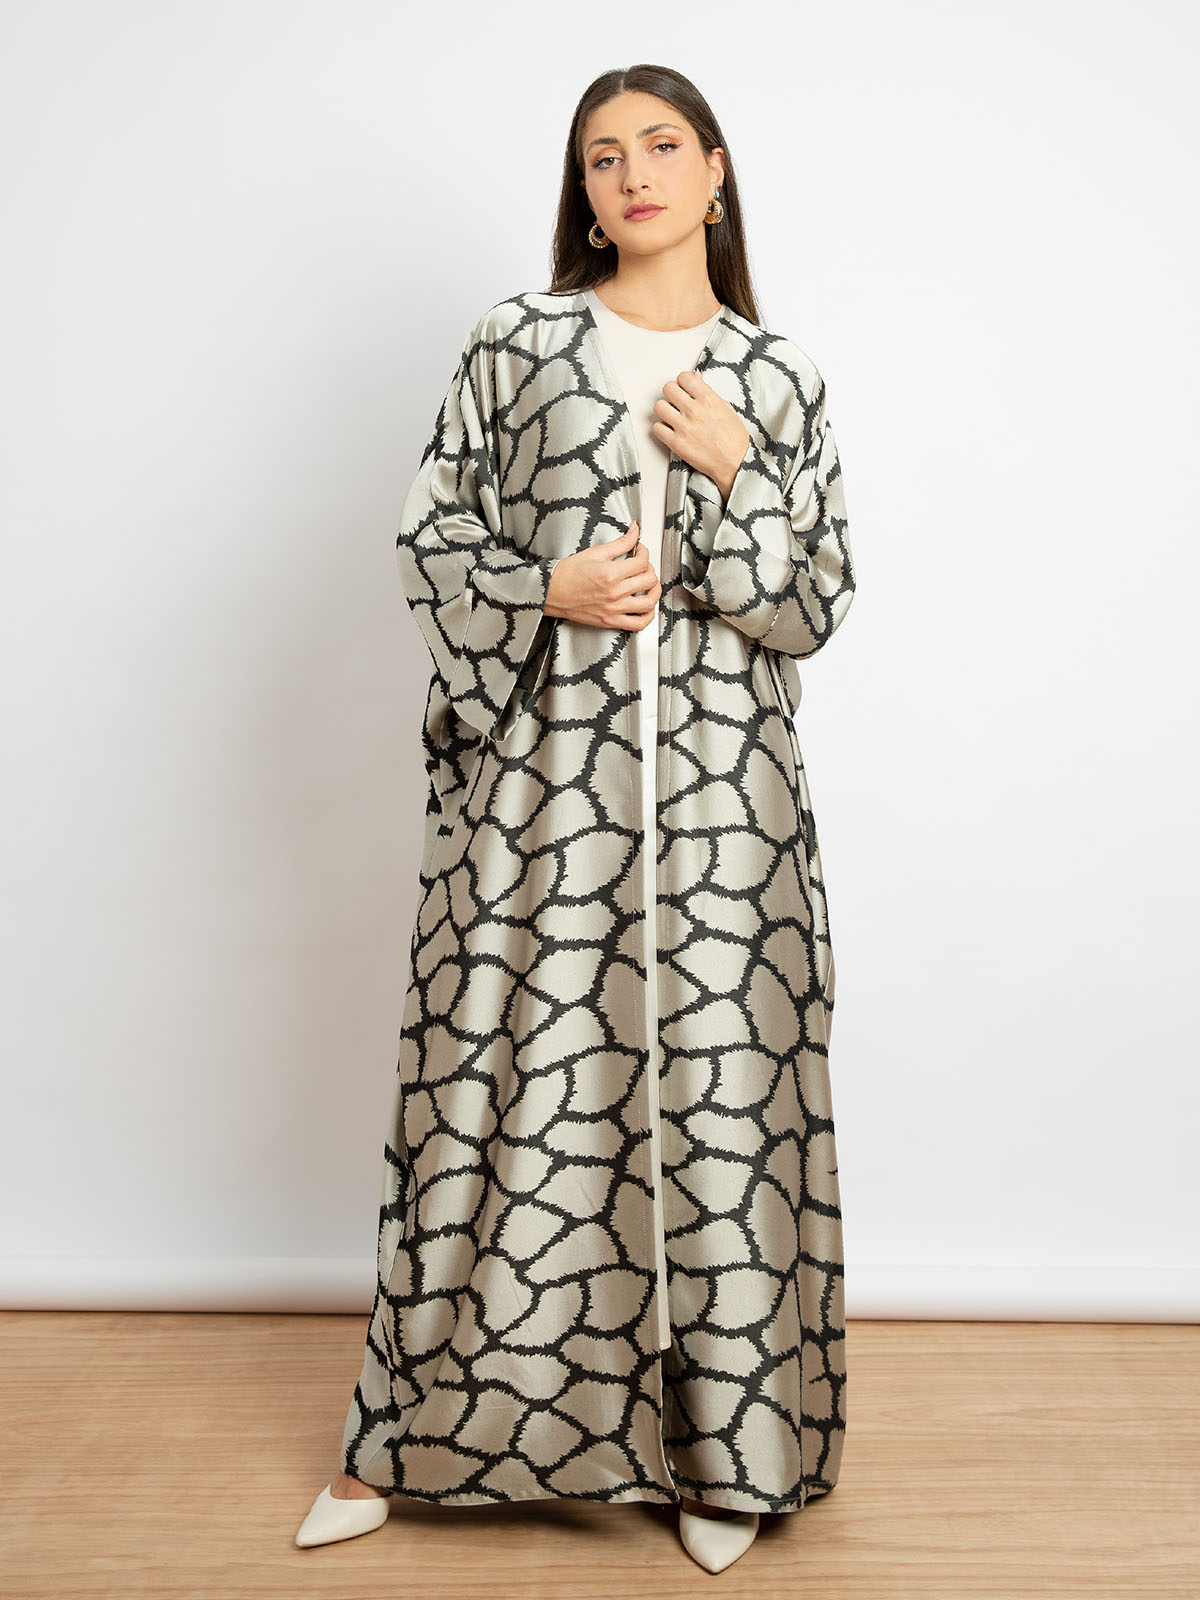 Kaafmeem women clothing wide fit beige color long fancy open abaya with giraffe print in satin feel fabric